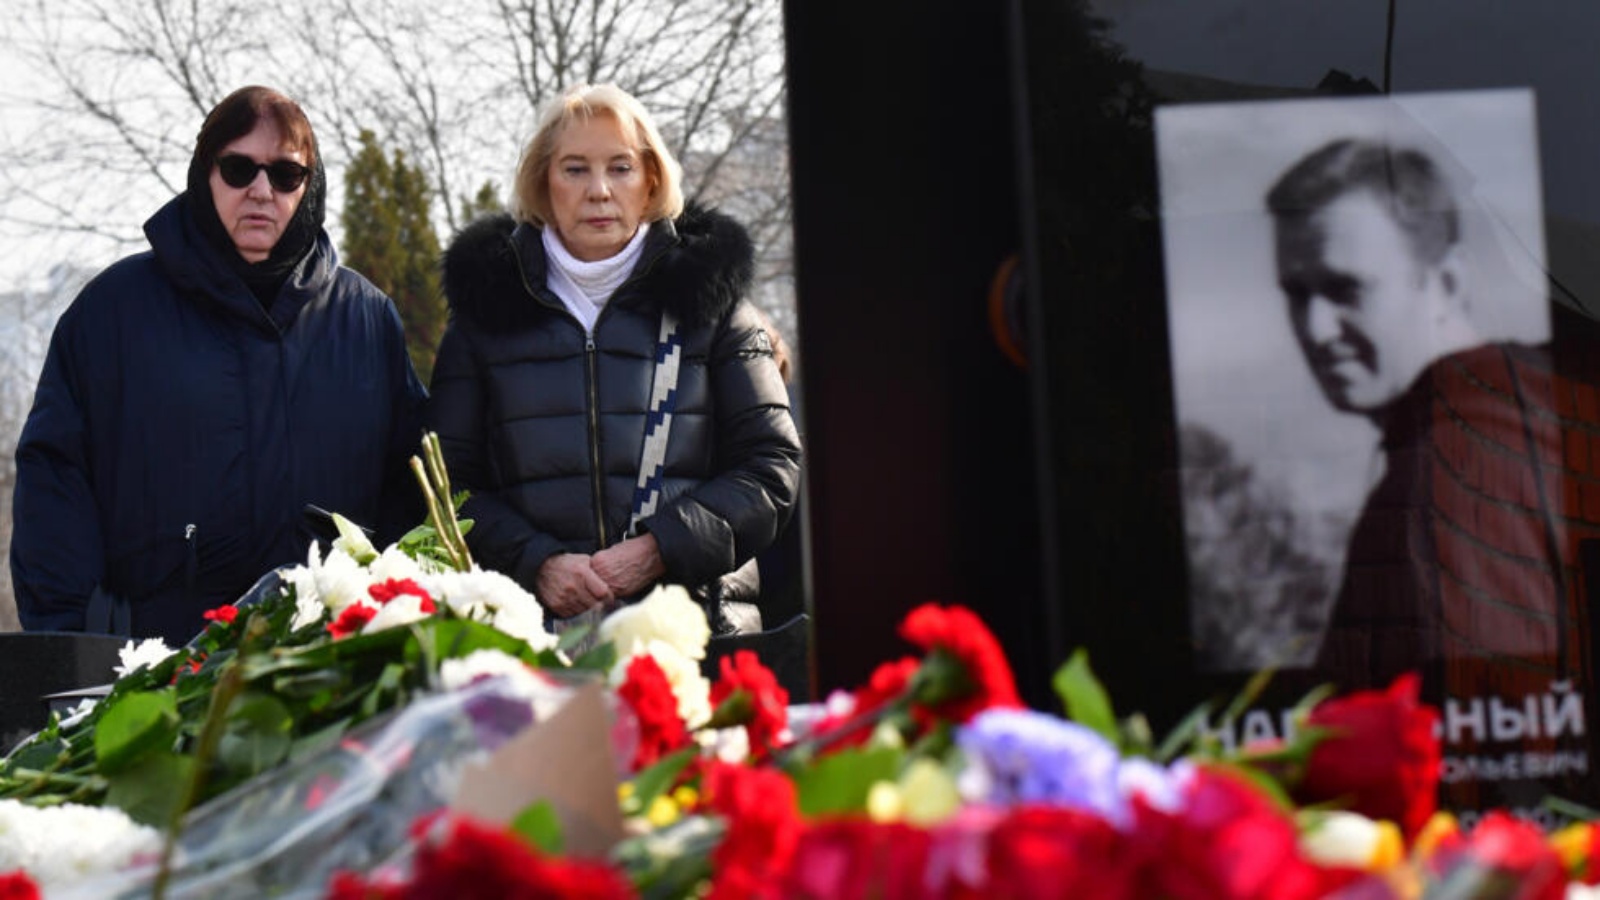 ليودميلا نافالنايا والدة المعارض الأول للكرملين أليكسي نافالني (يسار) تزور مدفن ابنها برفقة والدة زوجته يوليا نافالنايا، في مقبرة بوريسوفو في موسكو في 2 آذار (مارس) 2024 غداة جنازته